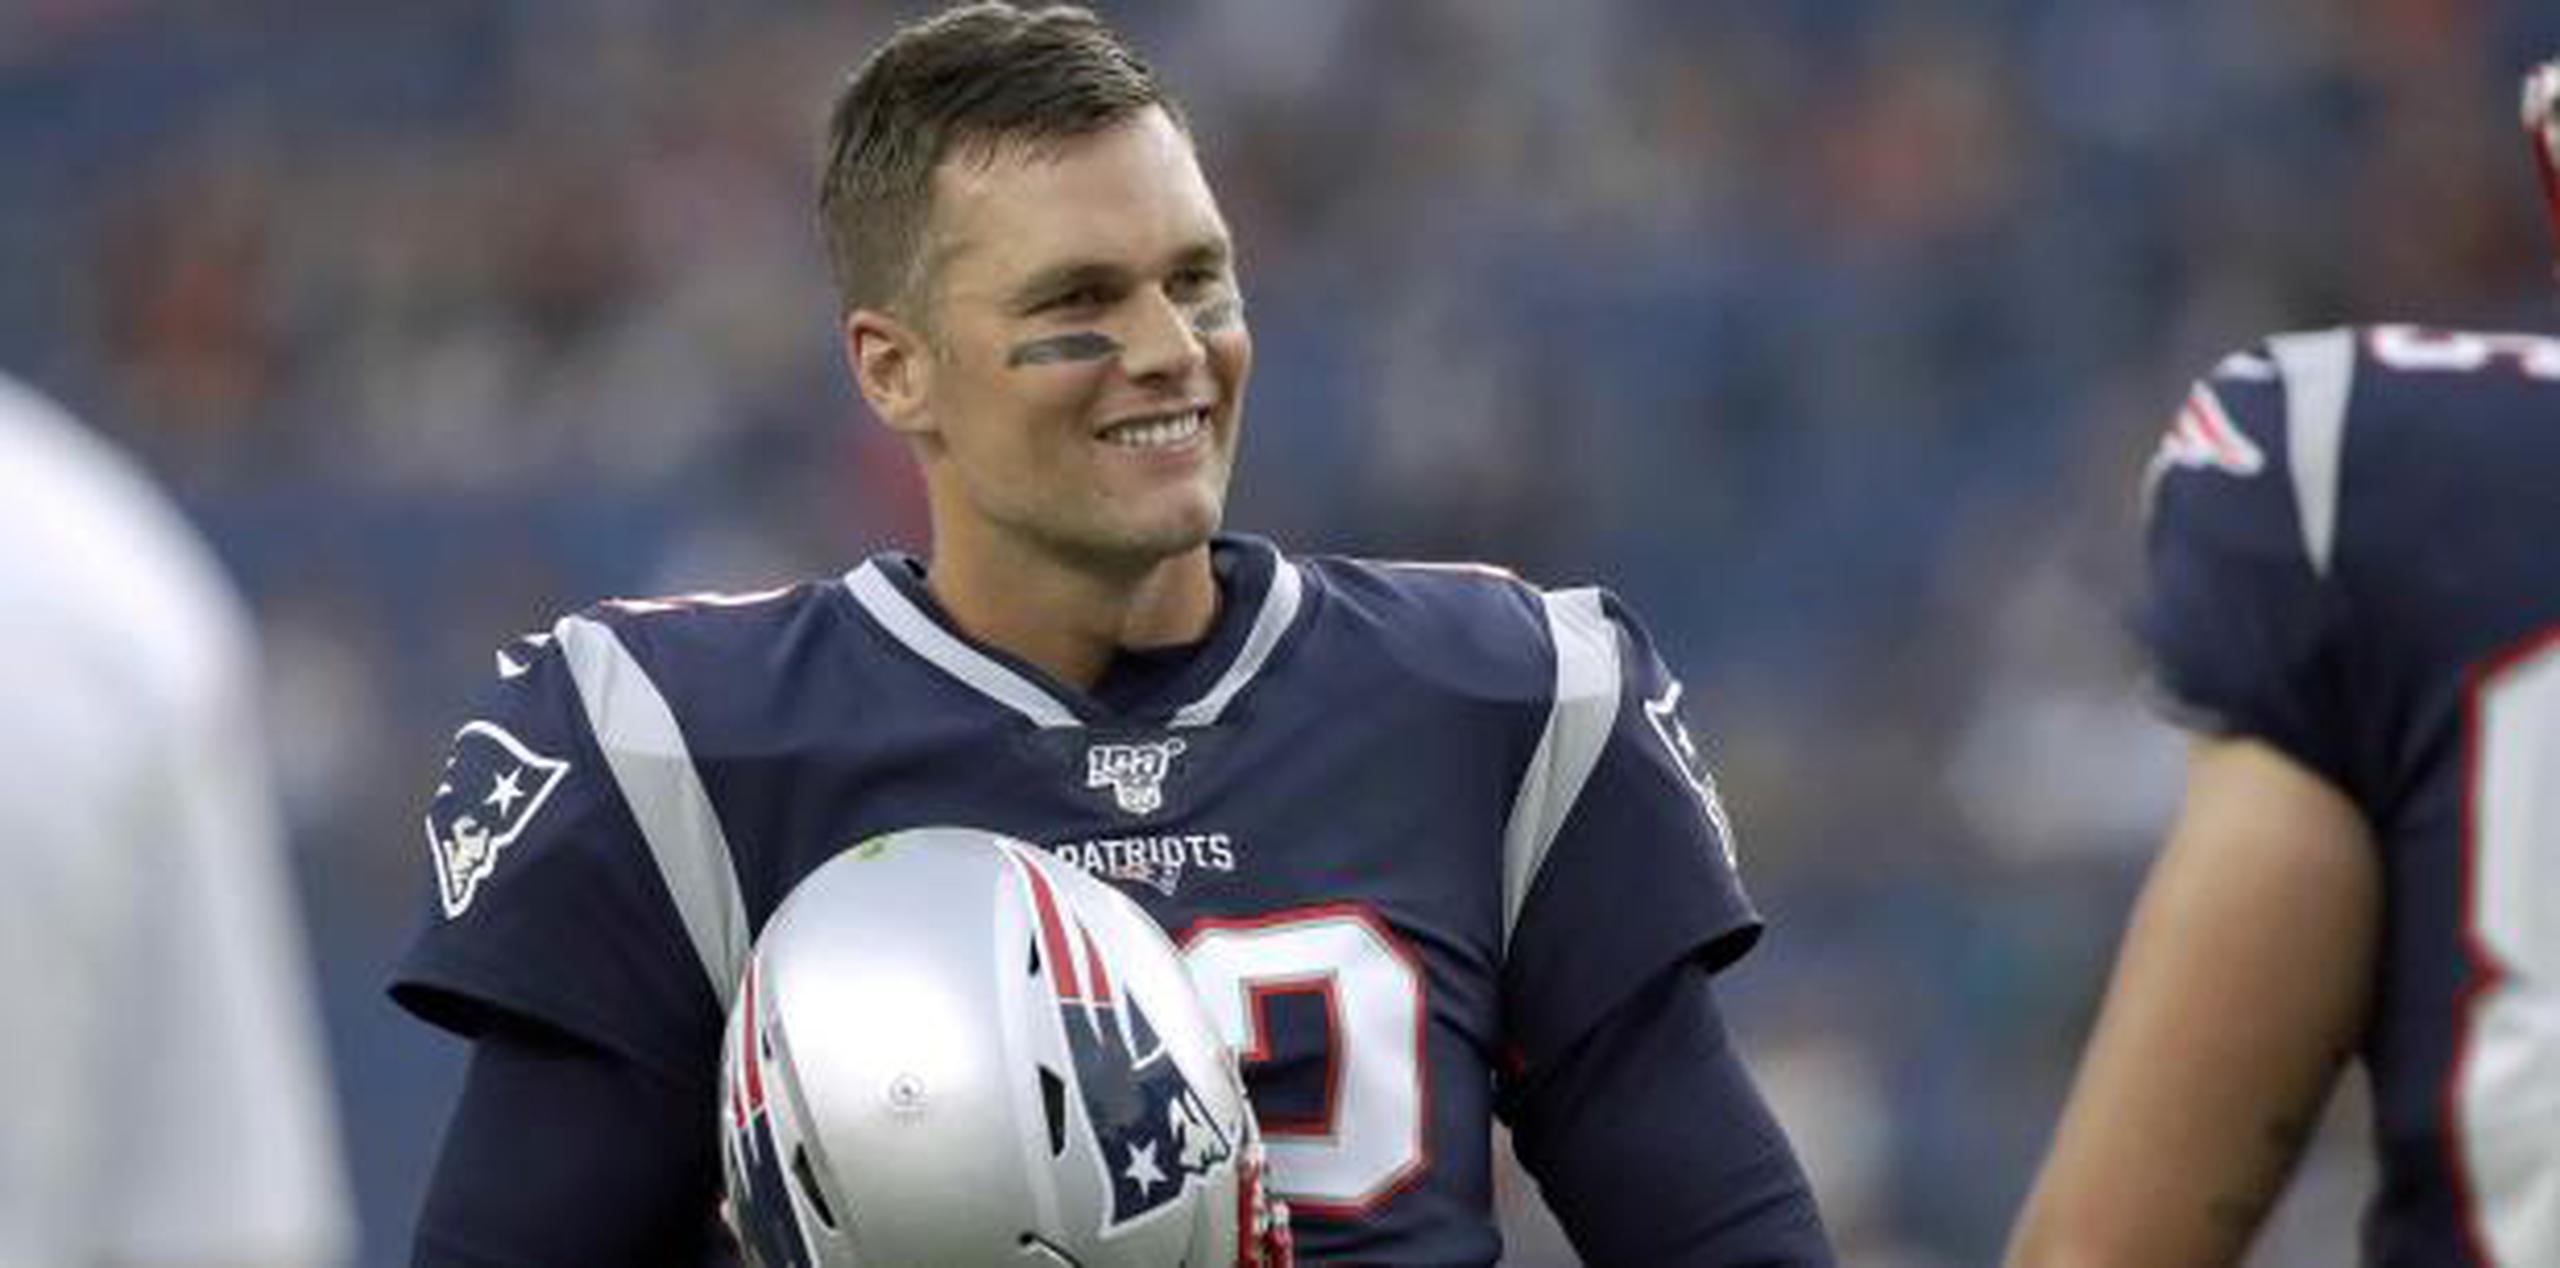 El mariscal de campo Tom Brady ha ganado seis campeonatos de Super Bowl con los Patriots de New England. (AP / Elise Amendola)